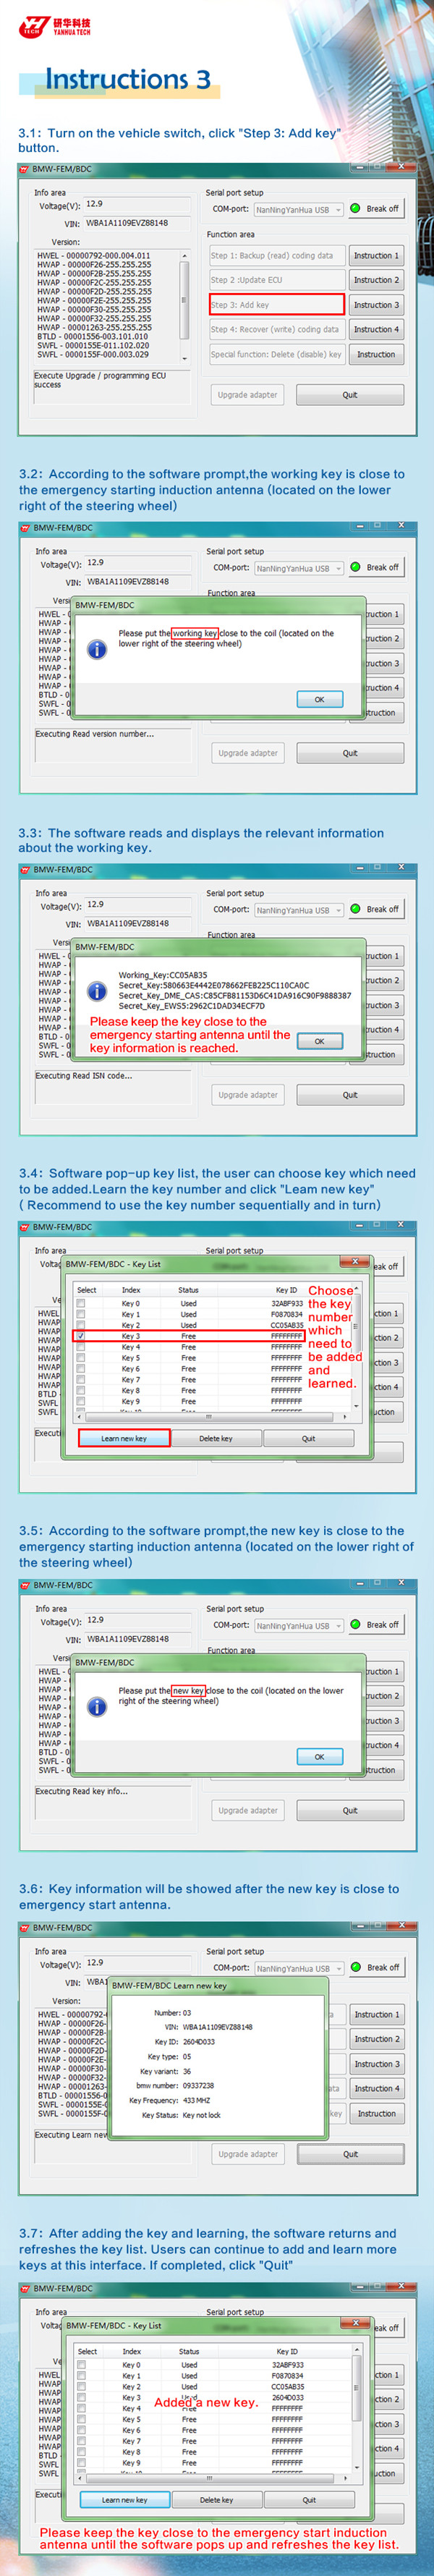 Schlüssel-Programmierer-Benutzer Instruction-3 BMWs FEM